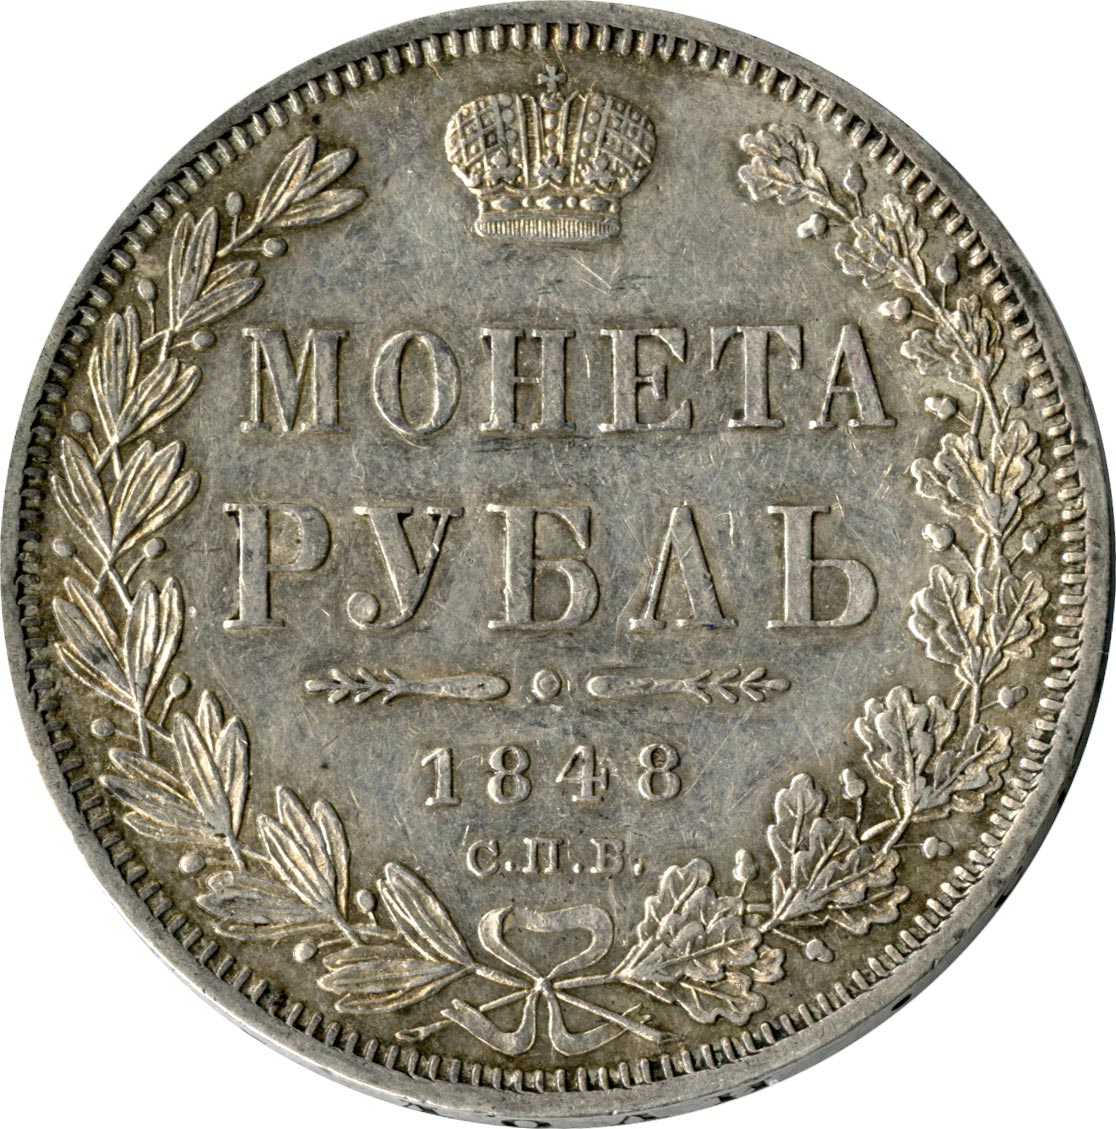 Полтина. Монета полтина государственная. Полтина фото. 10 Рублей 1847 года.